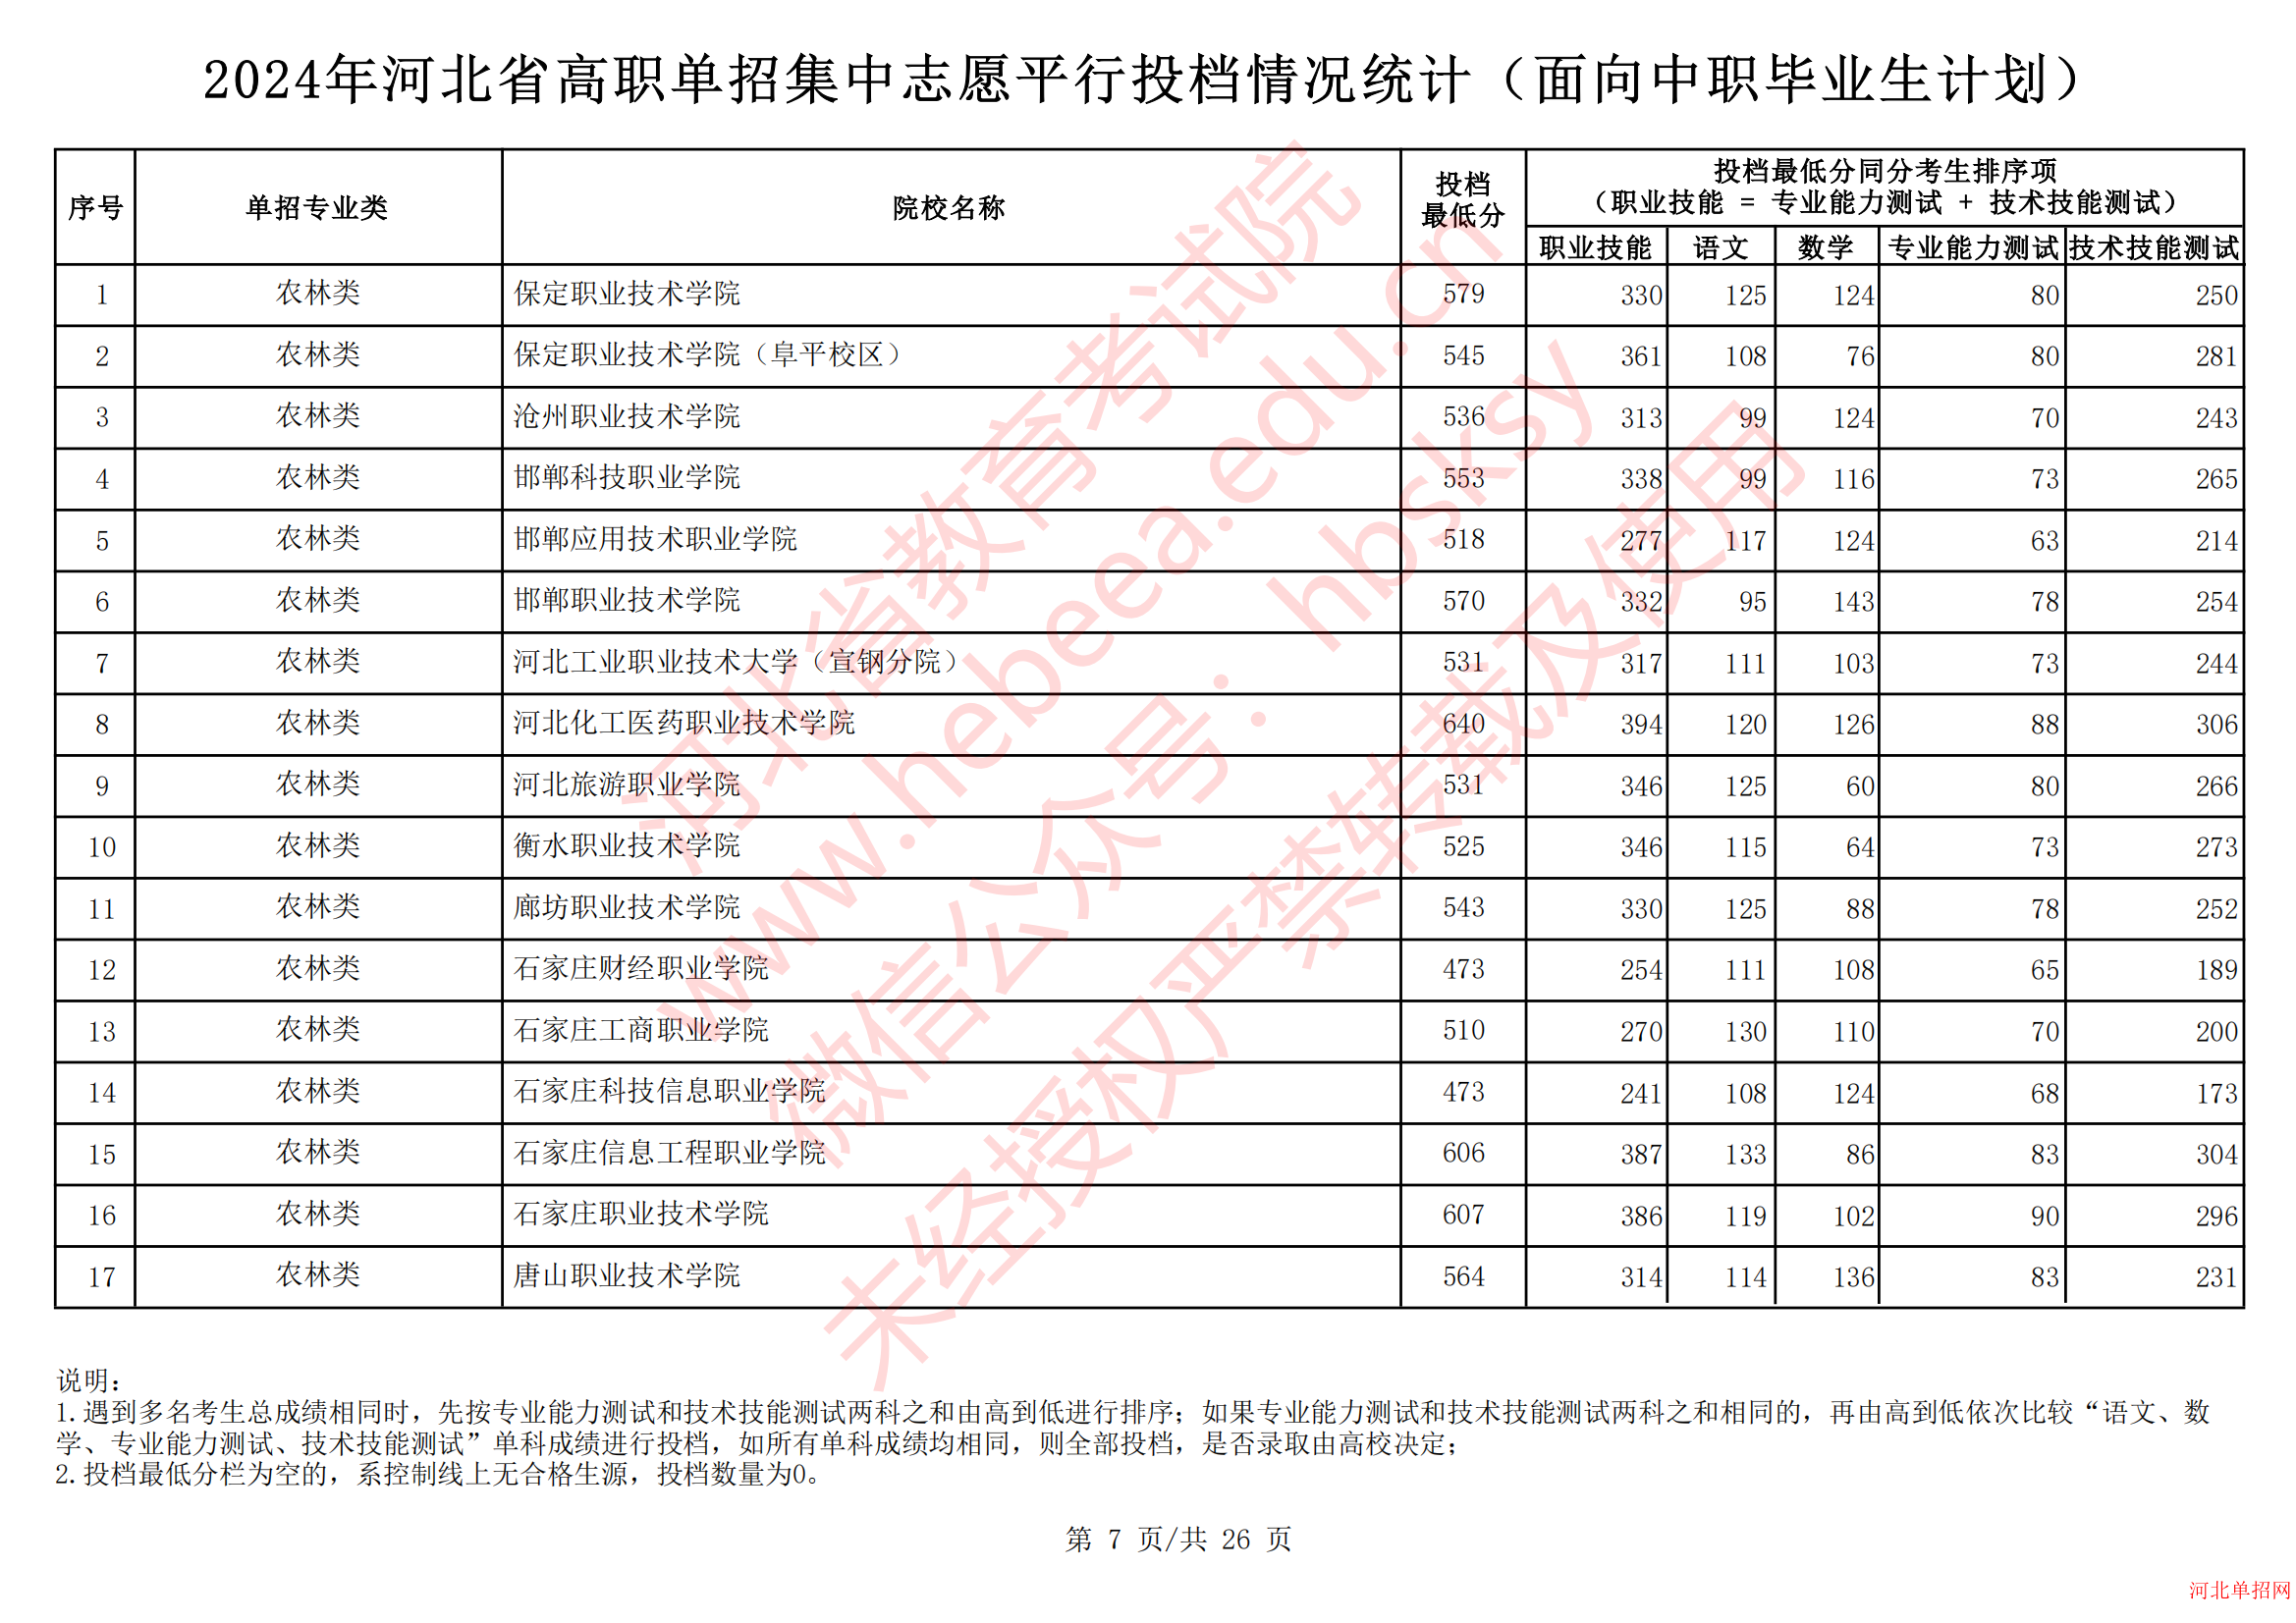 2024年河北省高职单招集中志愿平行投档情况统计（面向中职毕业生计划） 图7